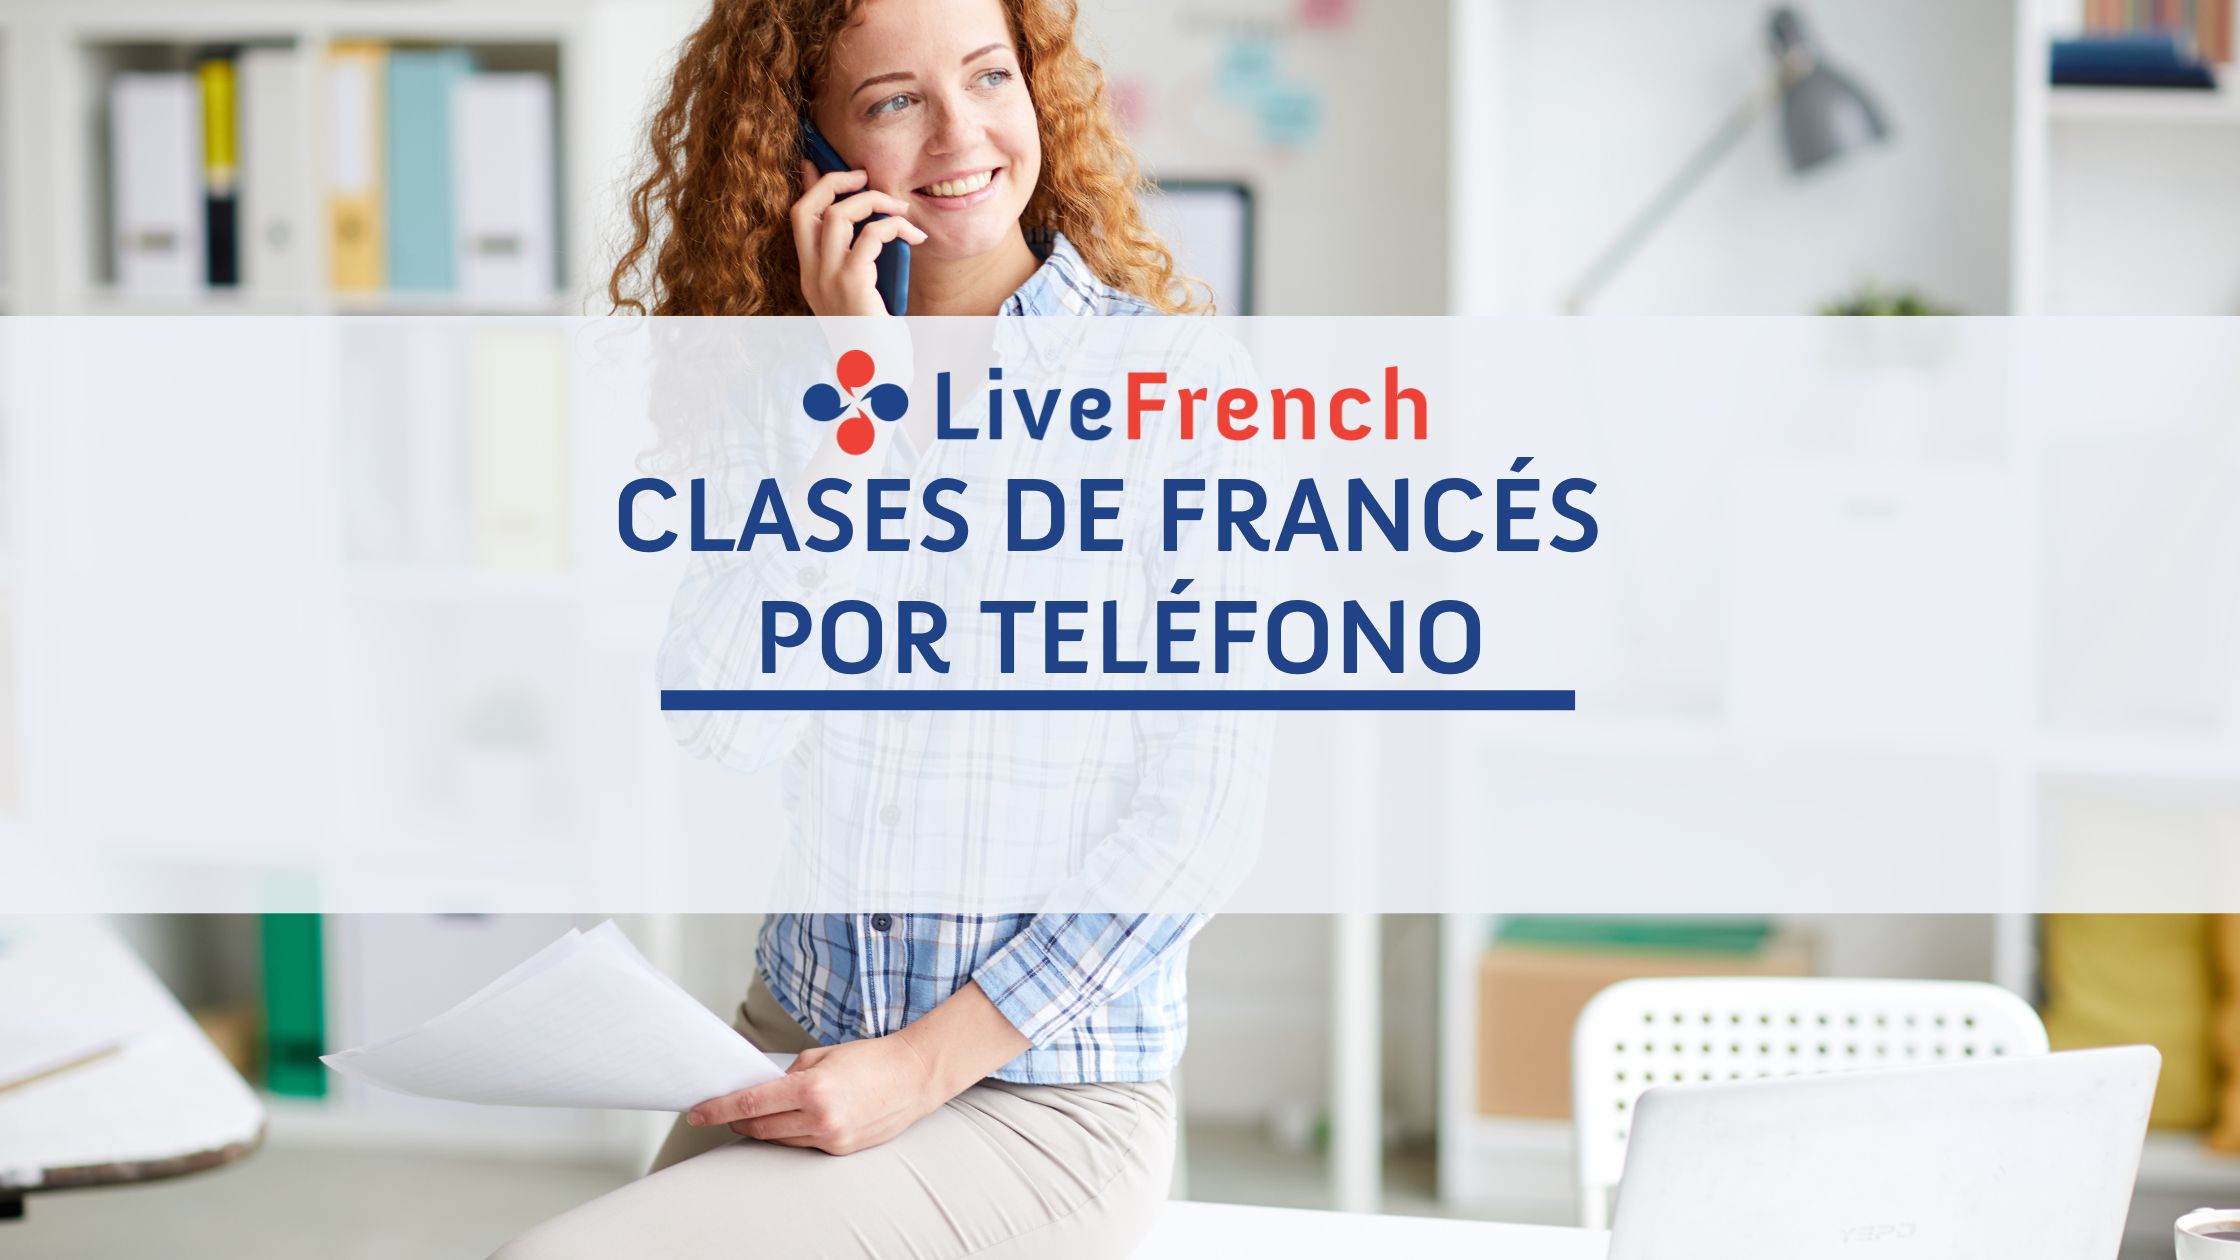 Clases de francés por teléfono